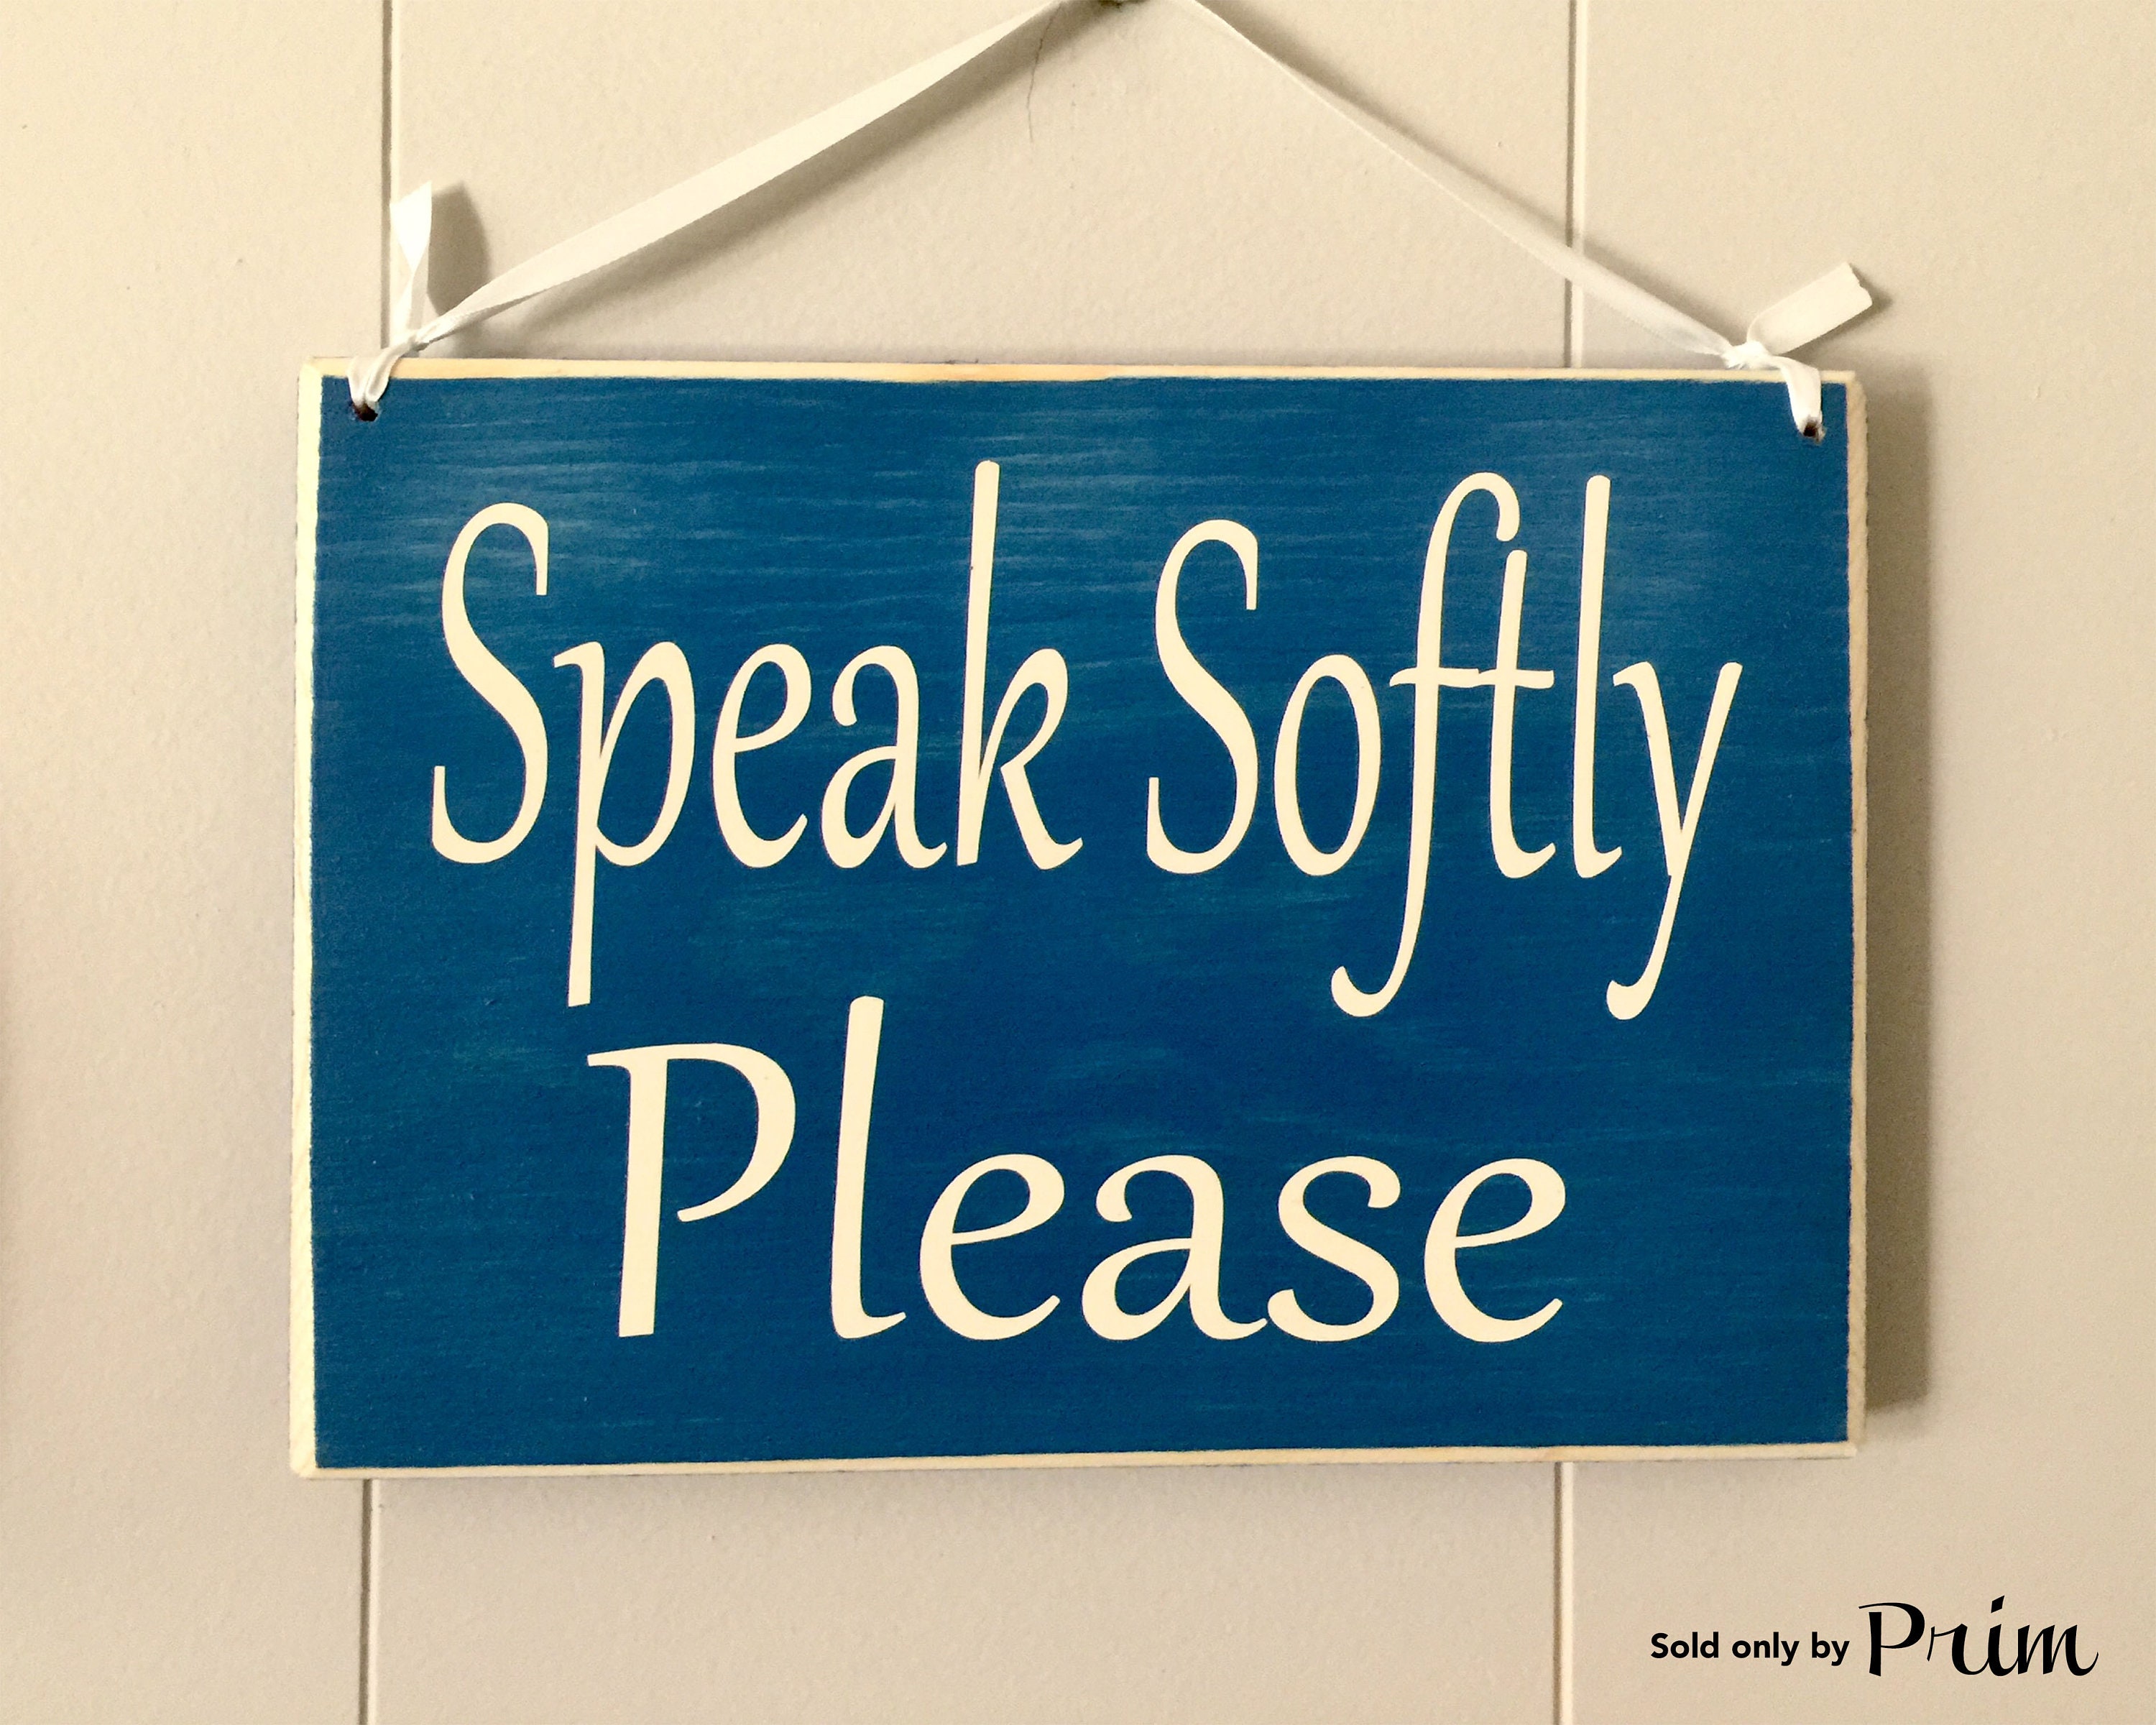 Quiet please. Speak quietly. Quietly spoken